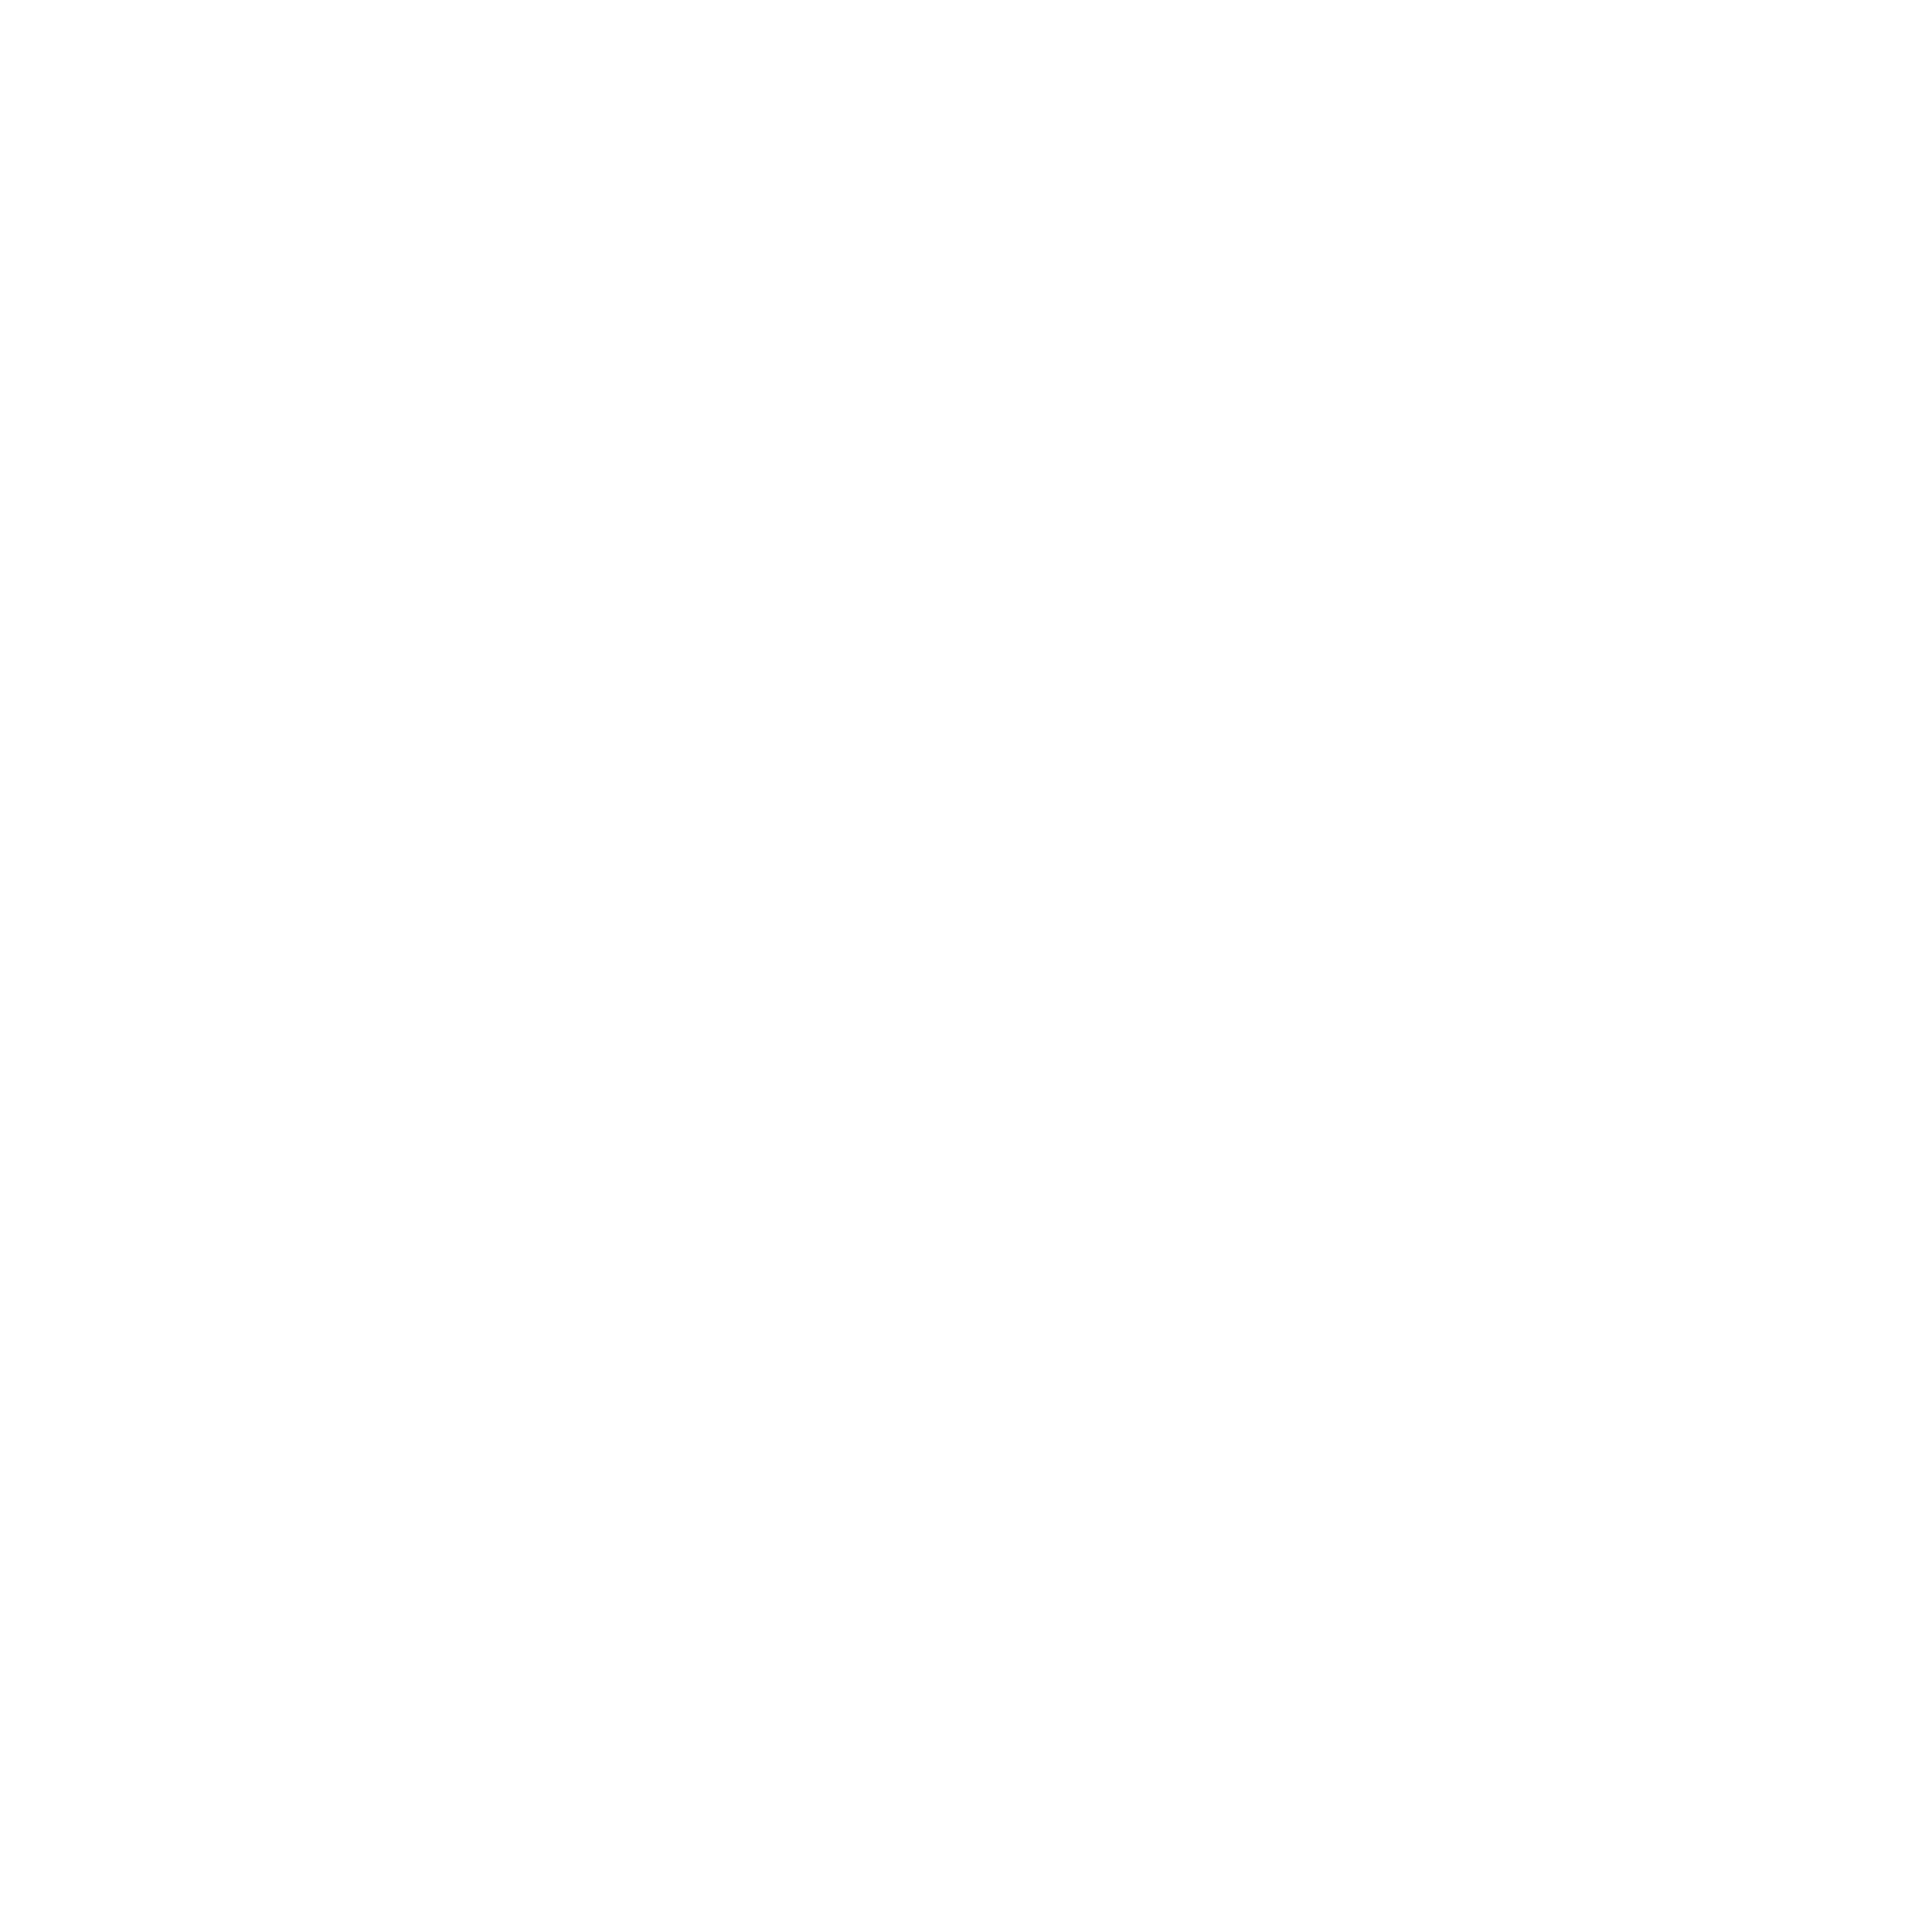 Publiq Media